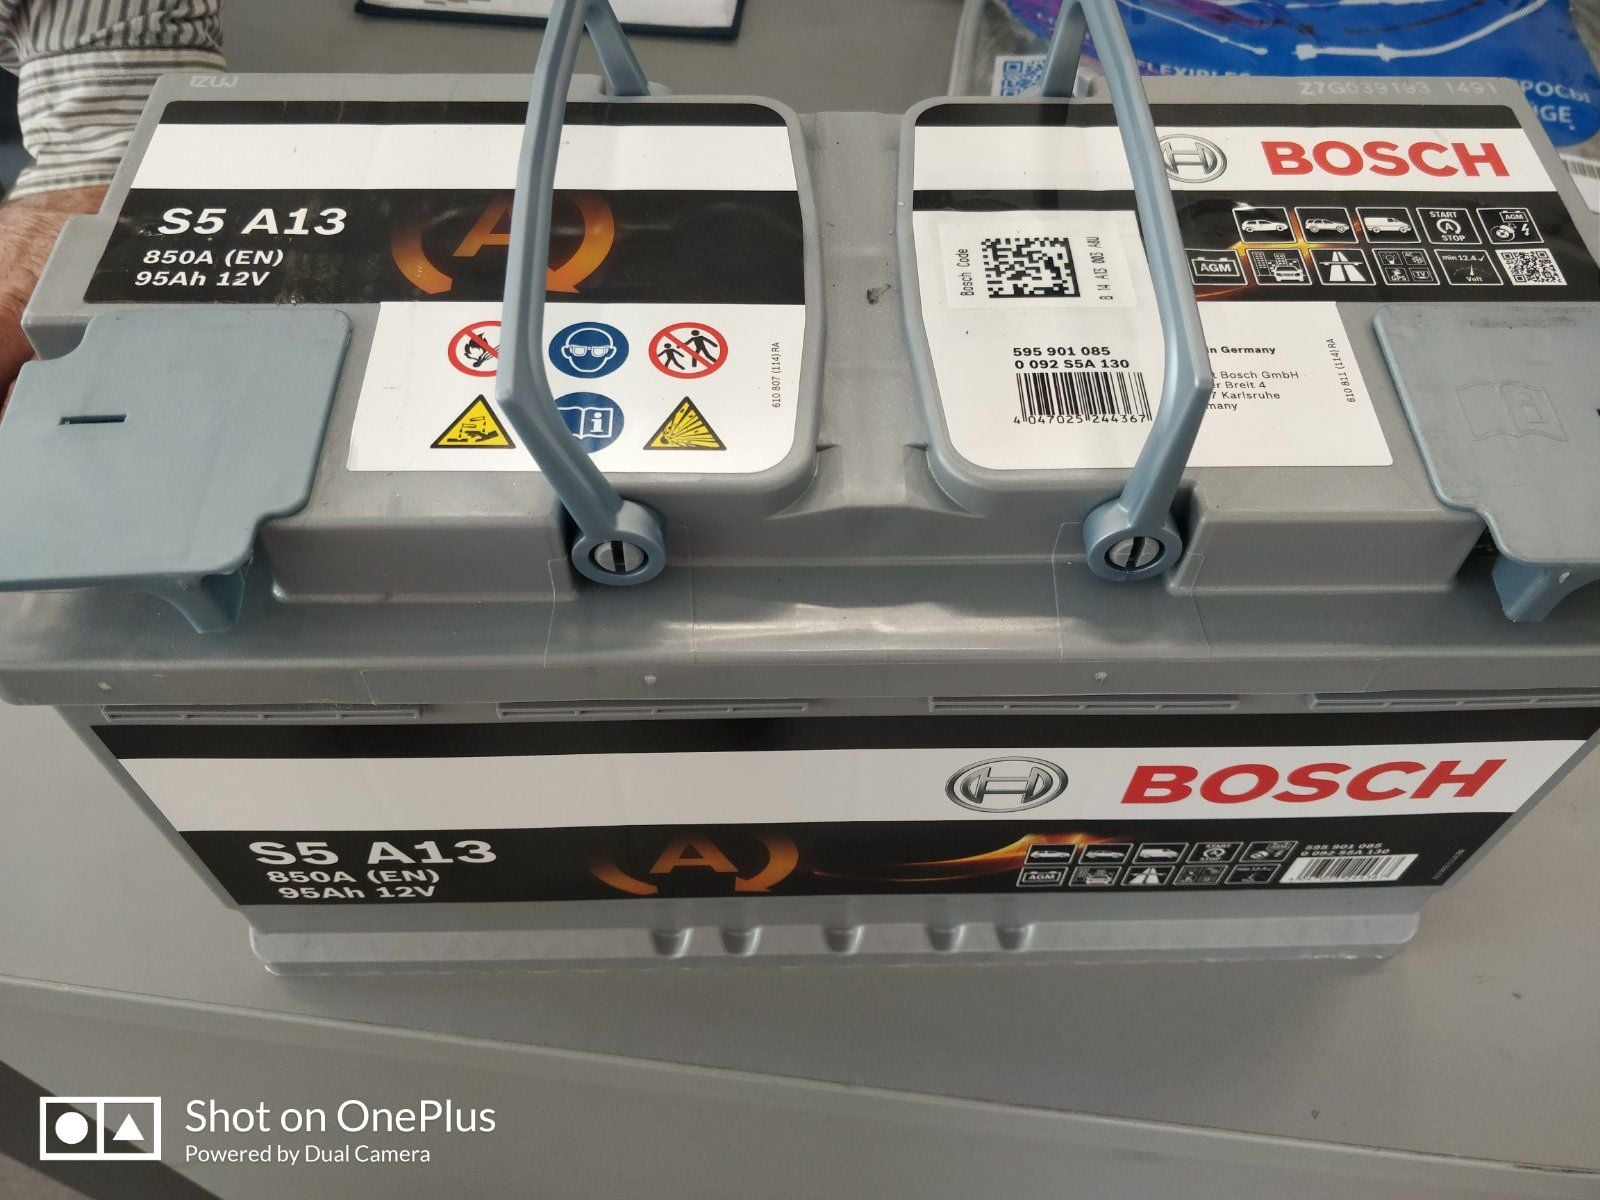 Starterbatterie Bosch S5 110Ah 920A 0092S50150 